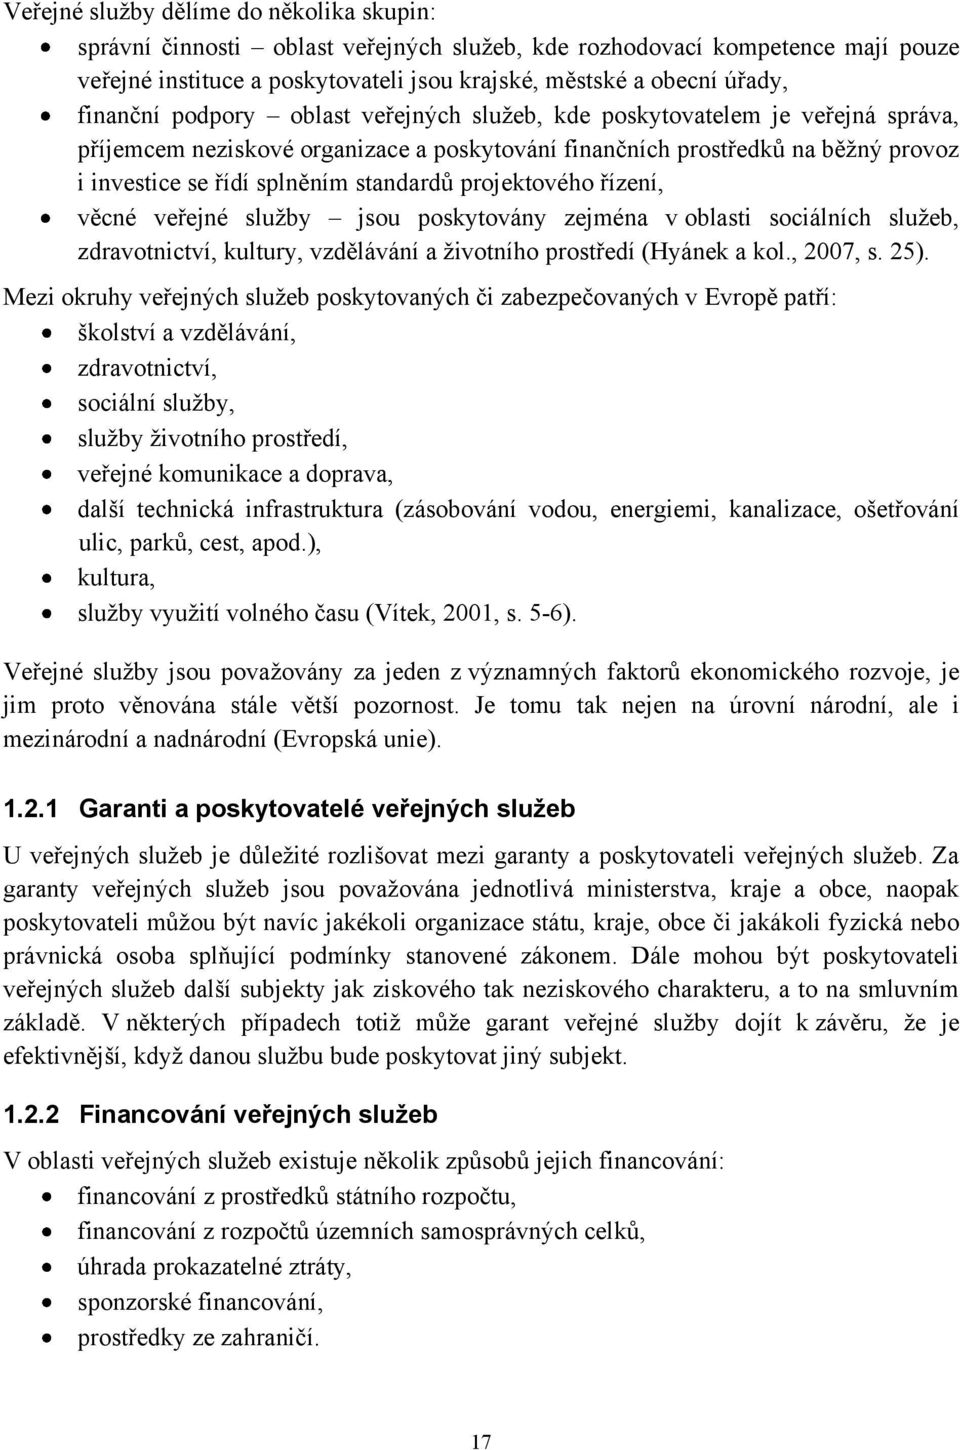 standardů projektového řízení, věcné veřejné sluţby jsou poskytovány zejména v oblasti sociálních sluţeb, zdravotnictví, kultury, vzdělávání a ţivotního prostředí (Hyánek a kol., 2007, s. 25).